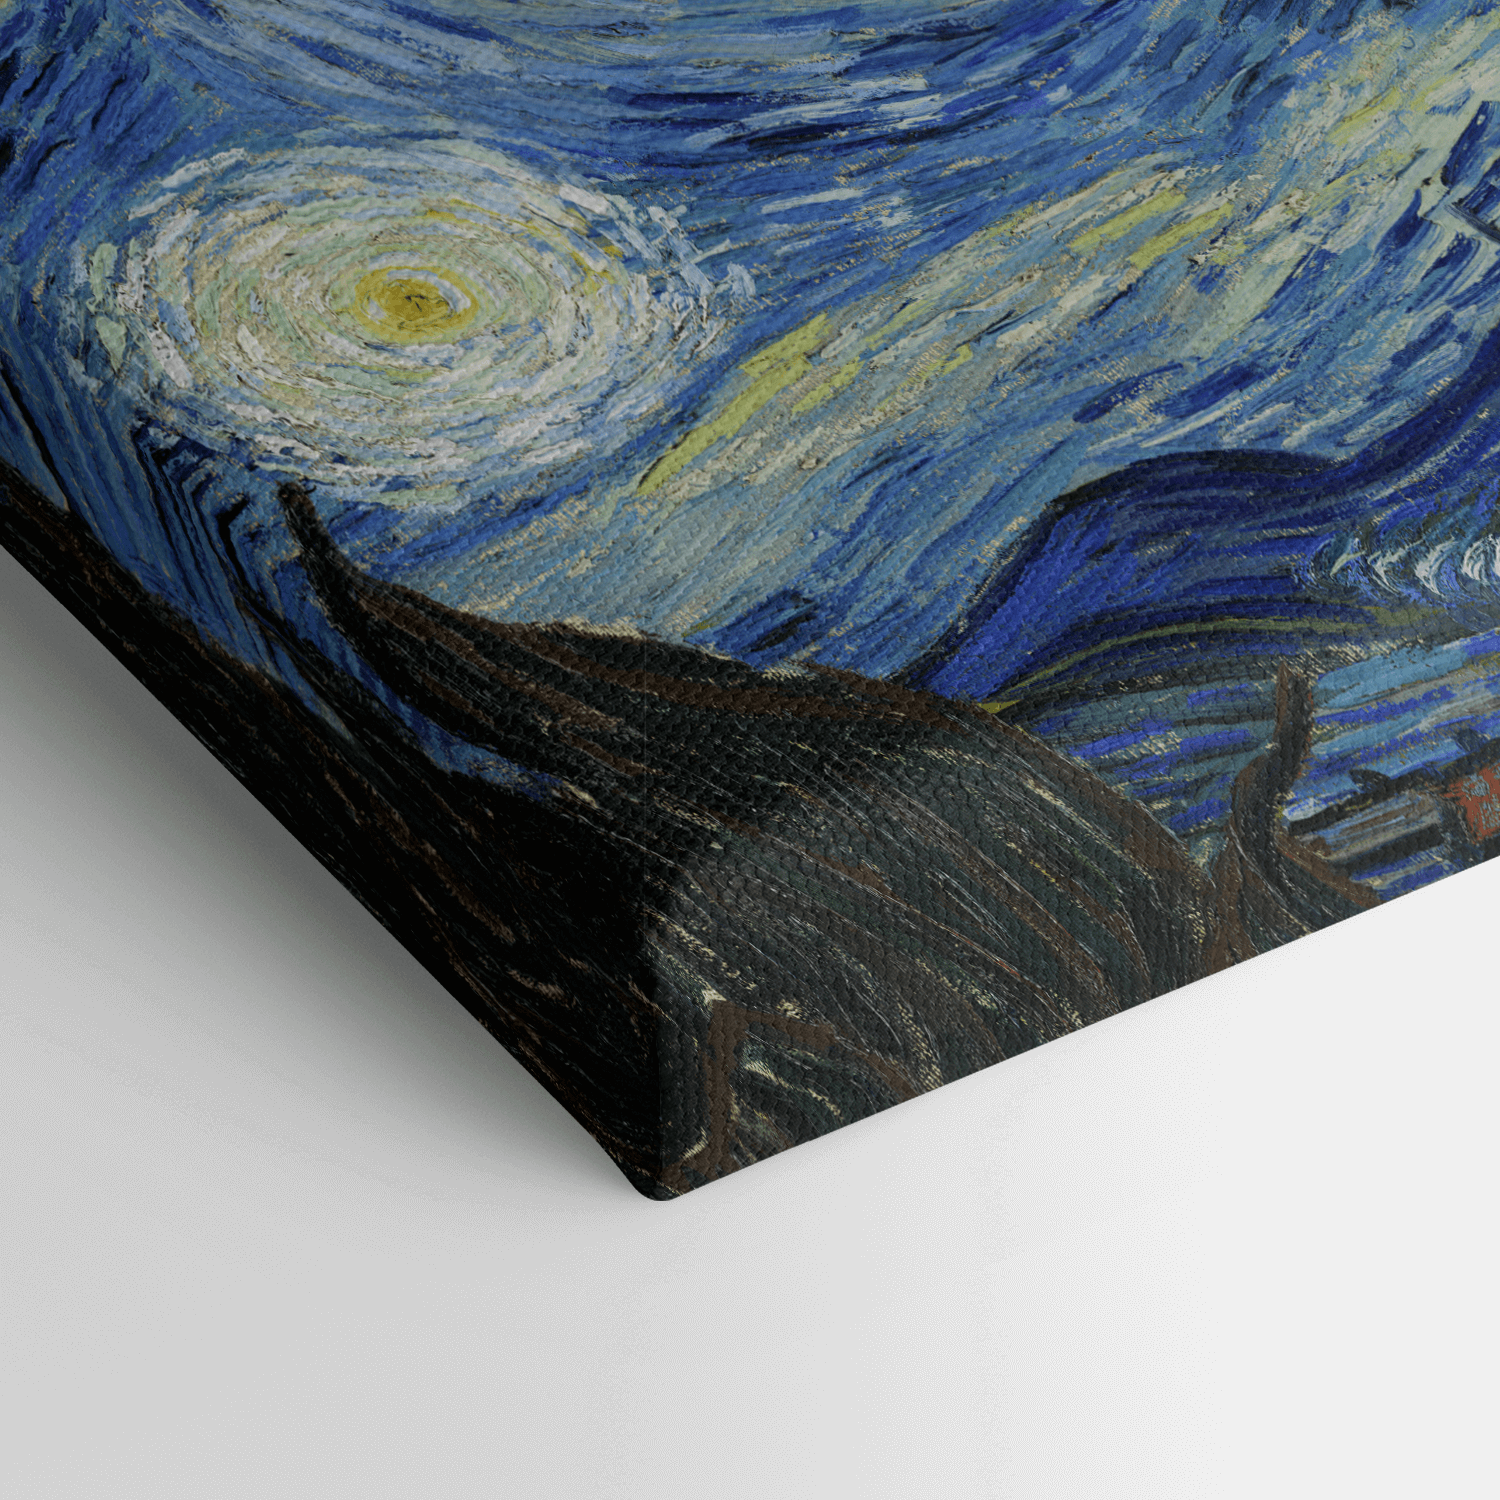 Leinwandbild - Vincent van Gogh - Die Sternennacht